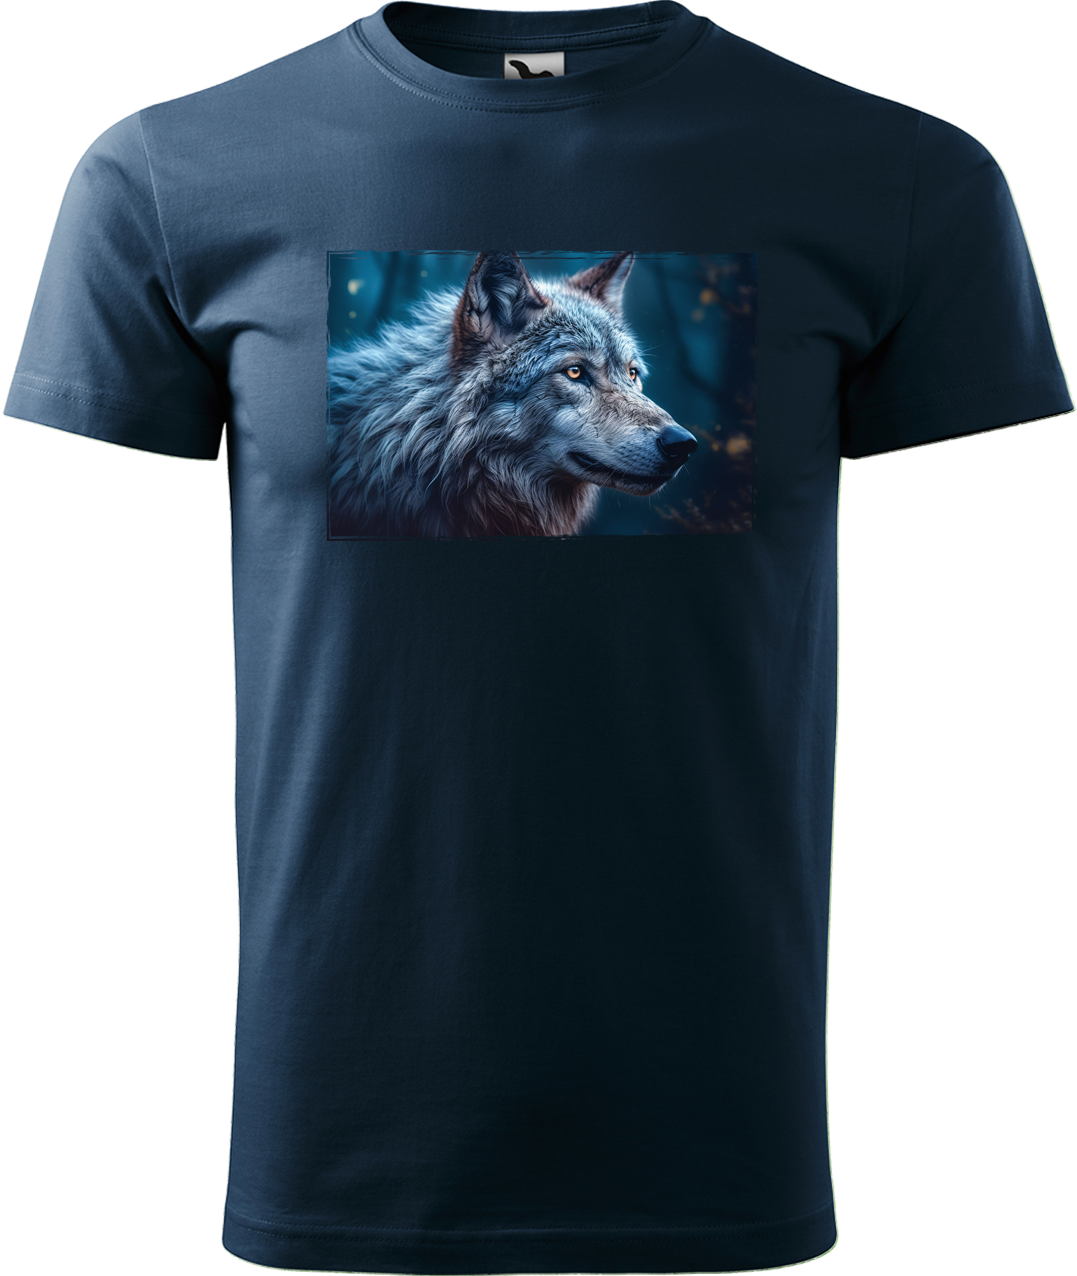 Pánské tričko s vlkem - Modrý vlk Velikost: XL, Barva: Námořní modrá (02)